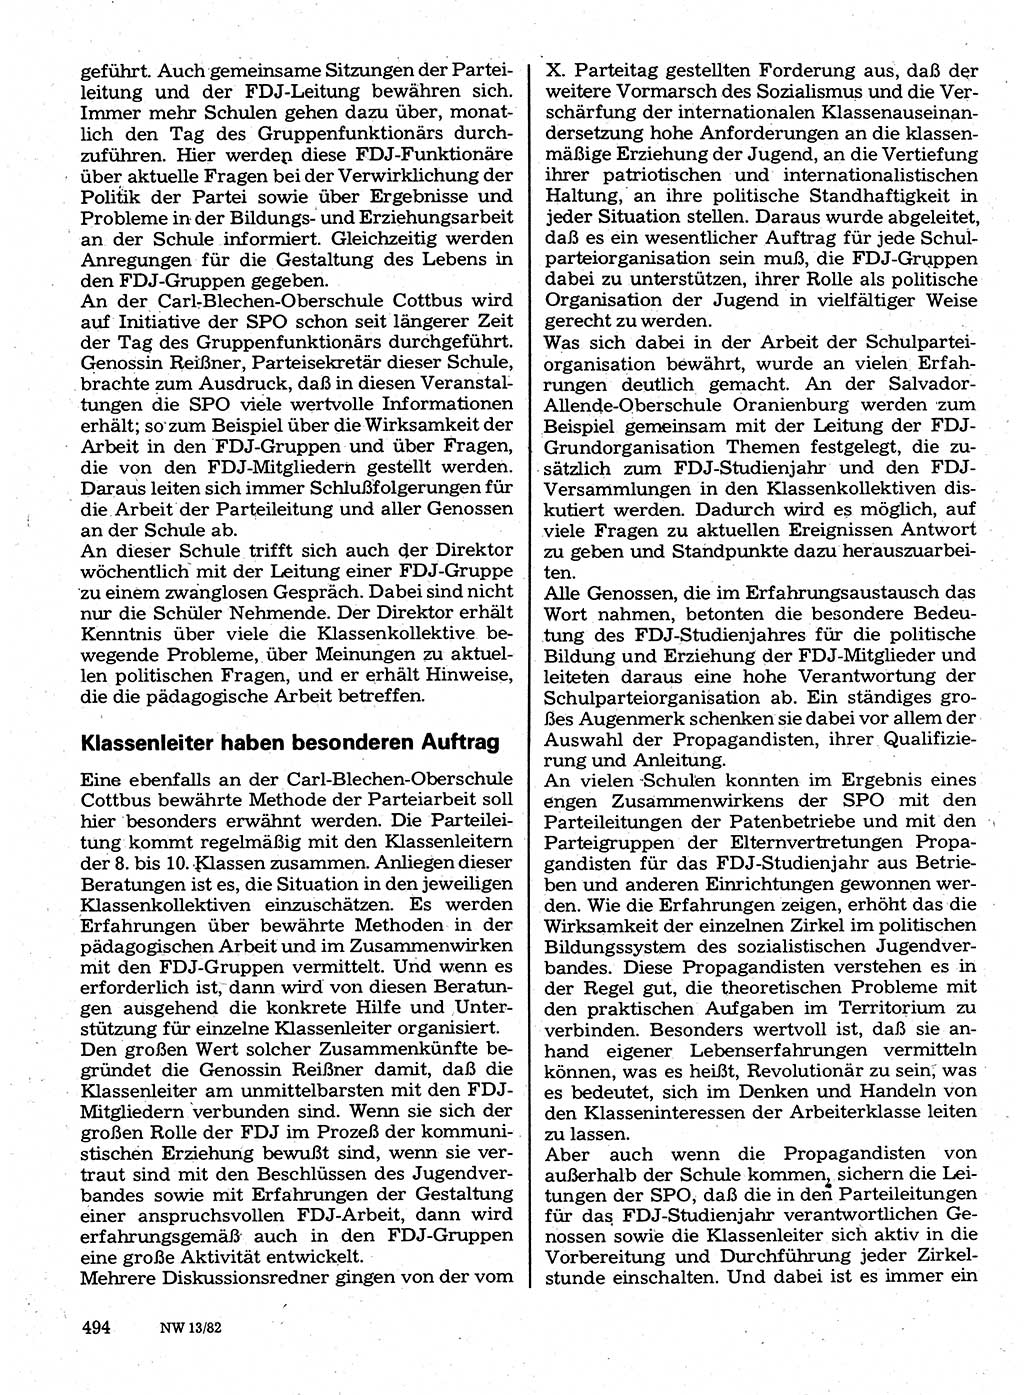 Neuer Weg (NW), Organ des Zentralkomitees (ZK) der SED (Sozialistische Einheitspartei Deutschlands) für Fragen des Parteilebens, 37. Jahrgang [Deutsche Demokratische Republik (DDR)] 1982, Seite 494 (NW ZK SED DDR 1982, S. 494)